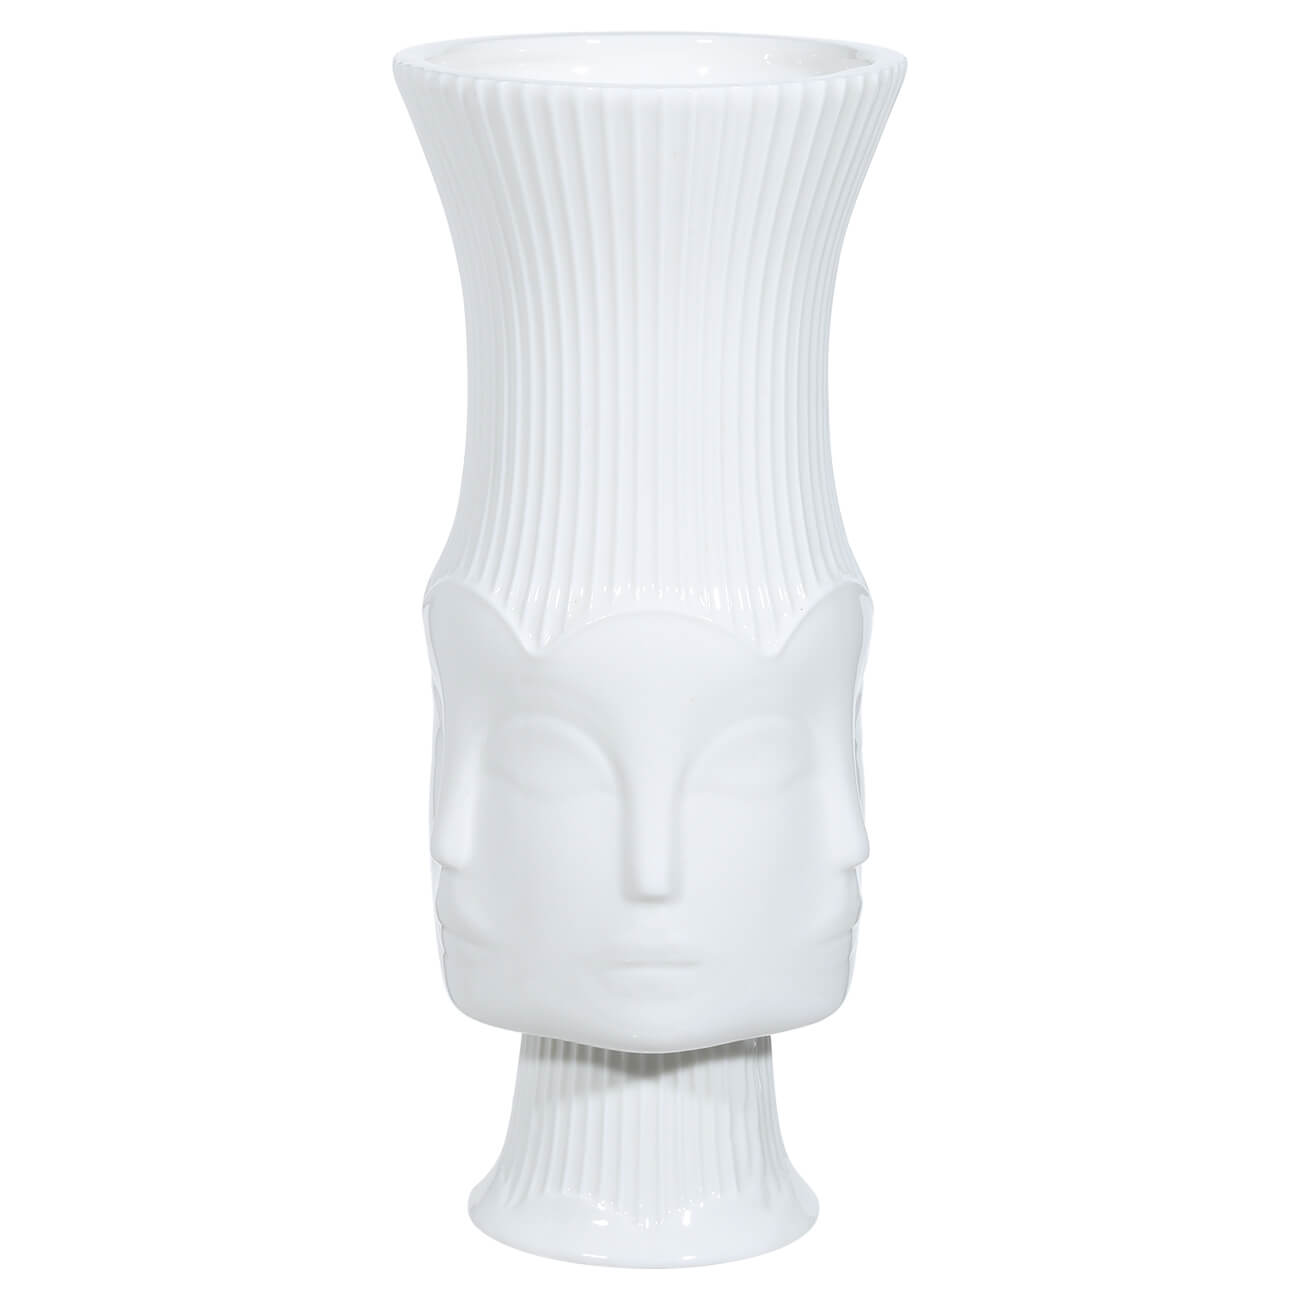 Ваза для цветов, 22 см, декоративная, на ножке, керамика, белая, Лица, Face ваза для ов 26 см декоративная керамика белая лицо face